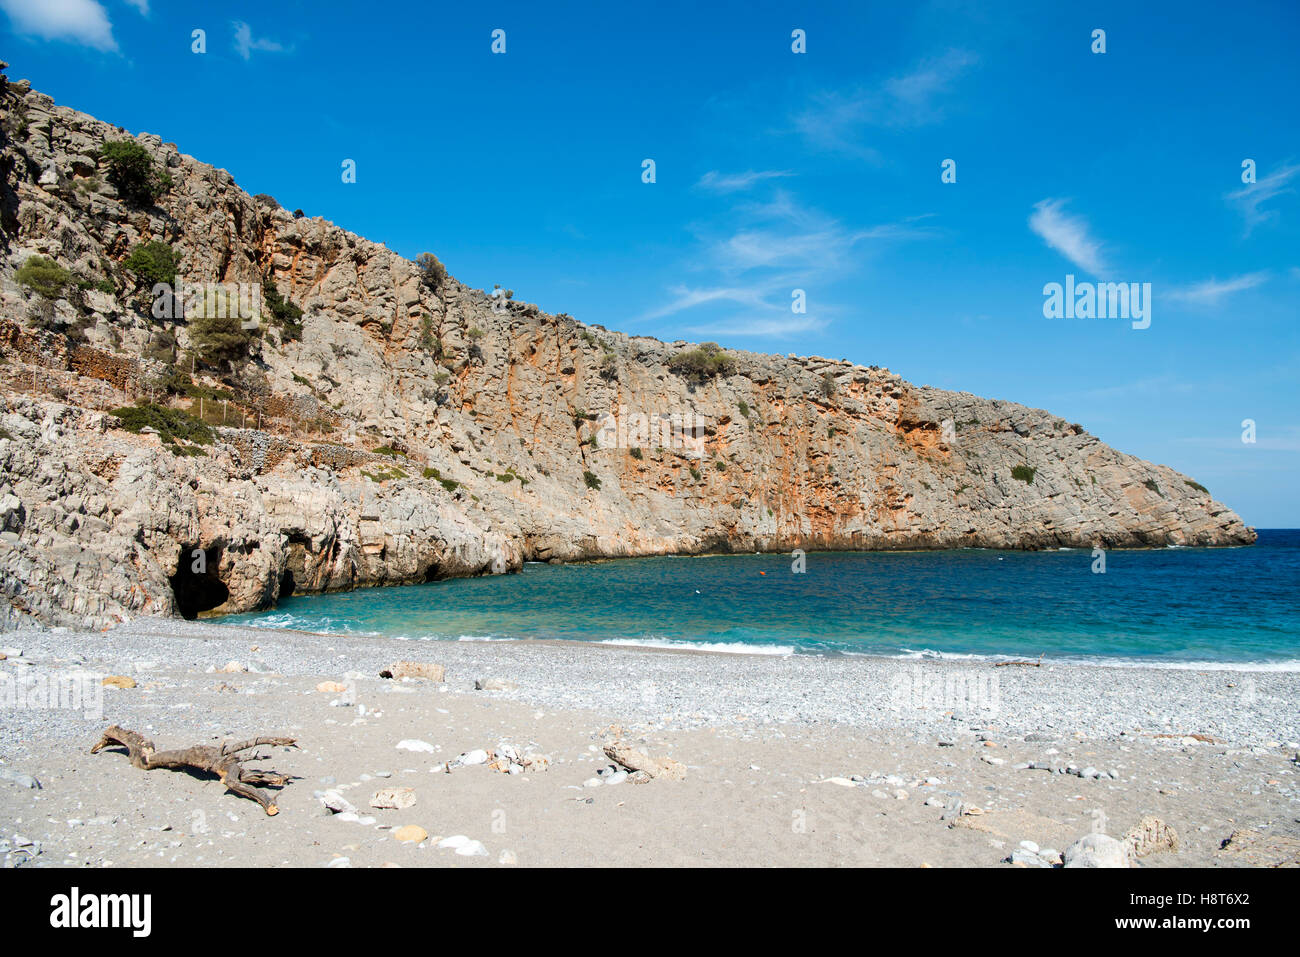 Griechenland, Kreta, Halbinsel Rodopou (Rodopos), Menies, Bucht bei der Ausgrabung von Diktinna Stock Photo